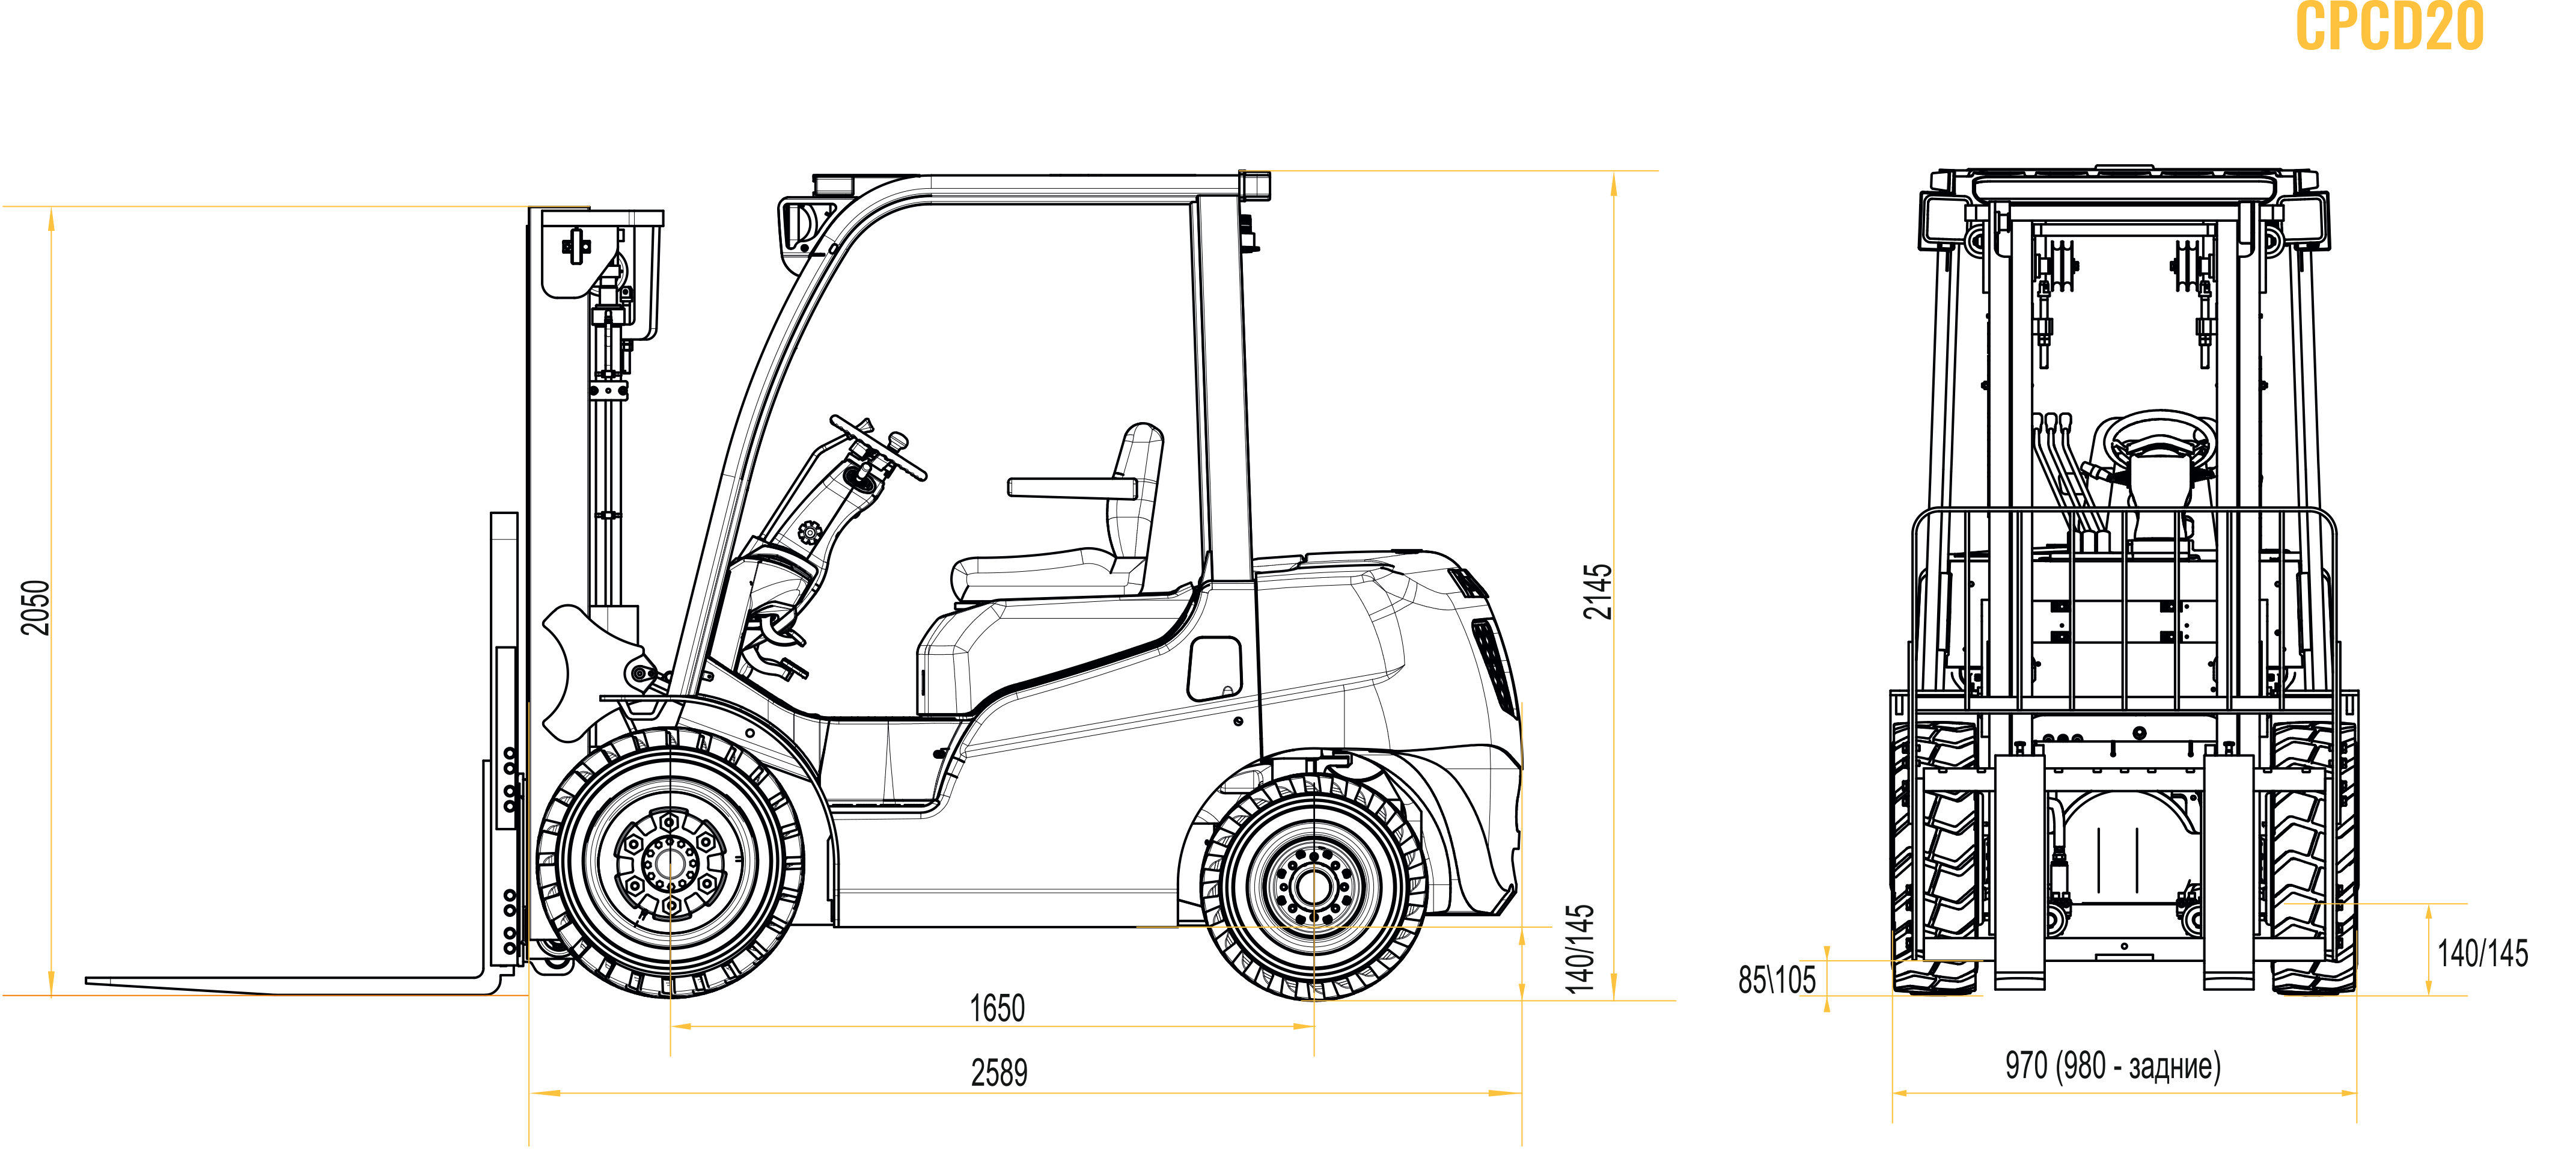 Дизельный вилочный погрузчик Polar Badger CPCD20 схема-чертеж